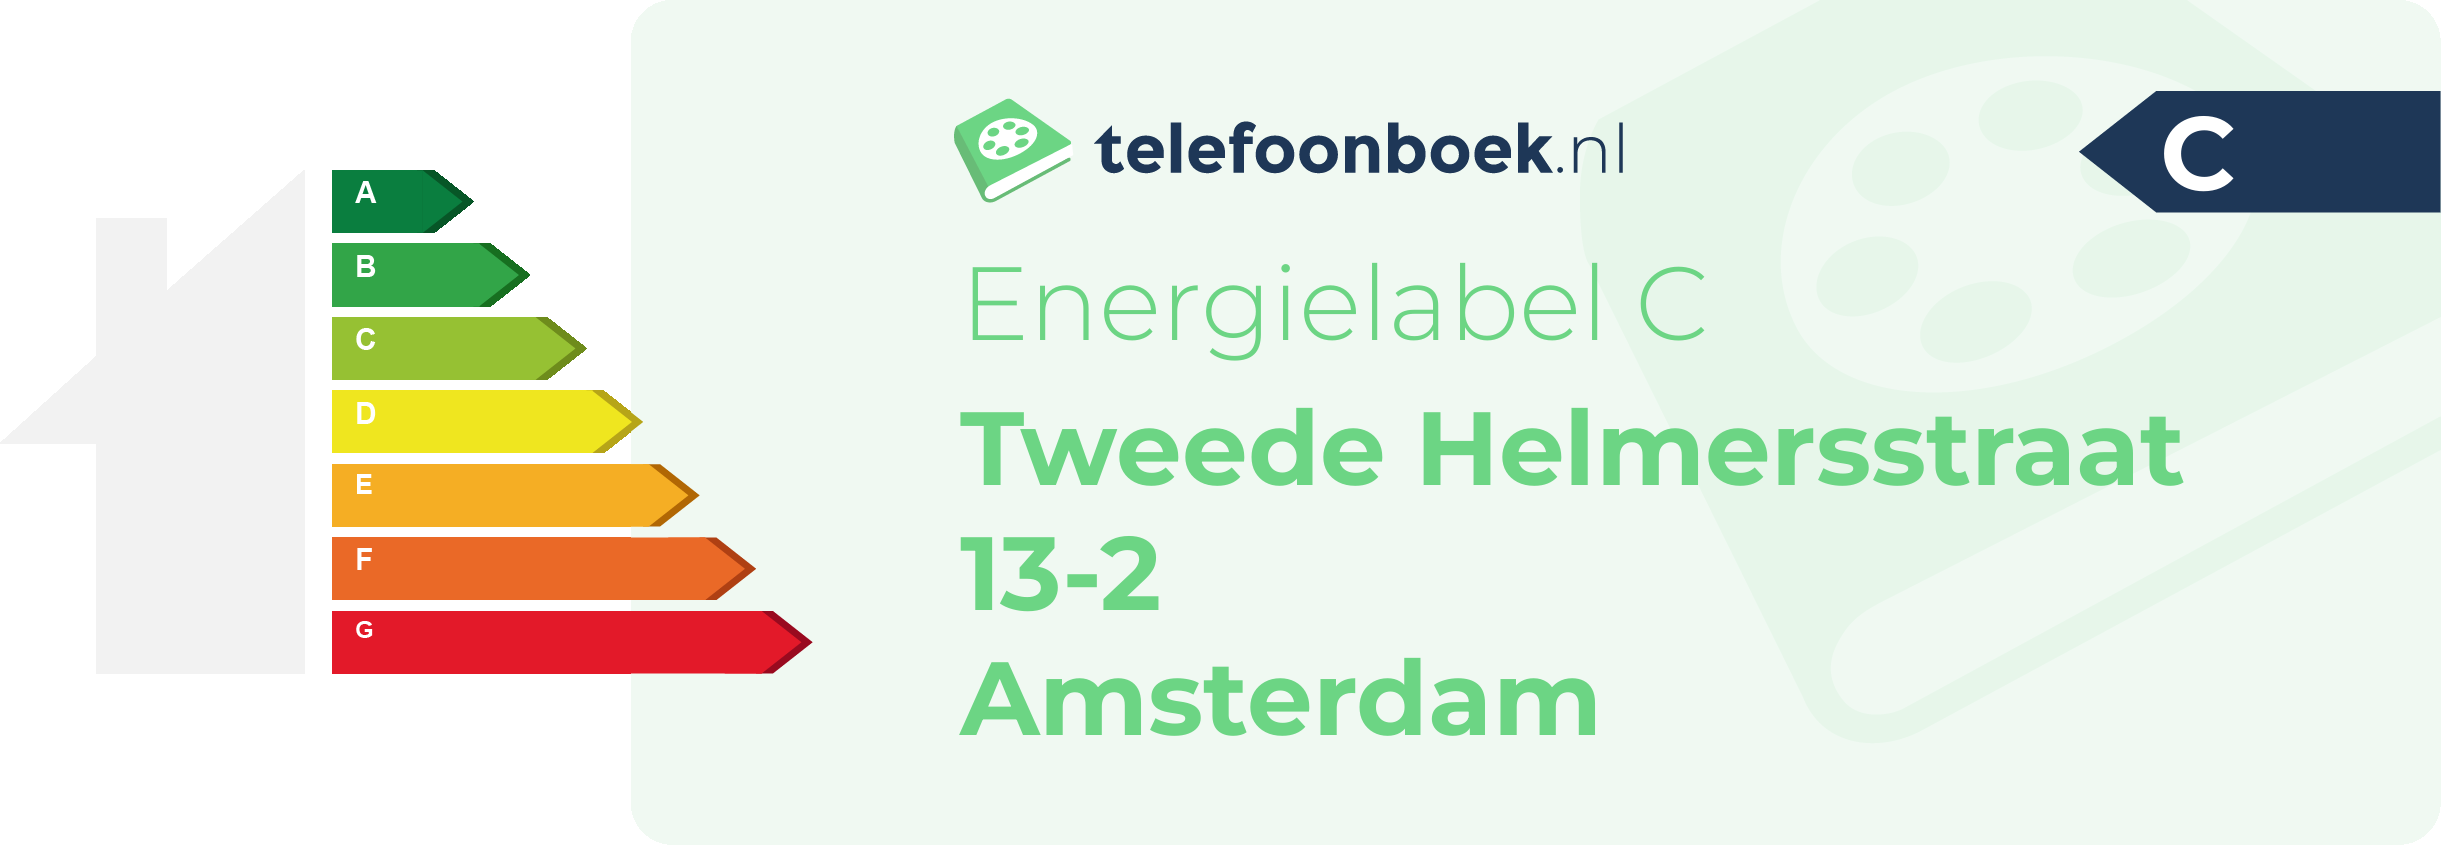 Energielabel Tweede Helmersstraat 13-2 Amsterdam